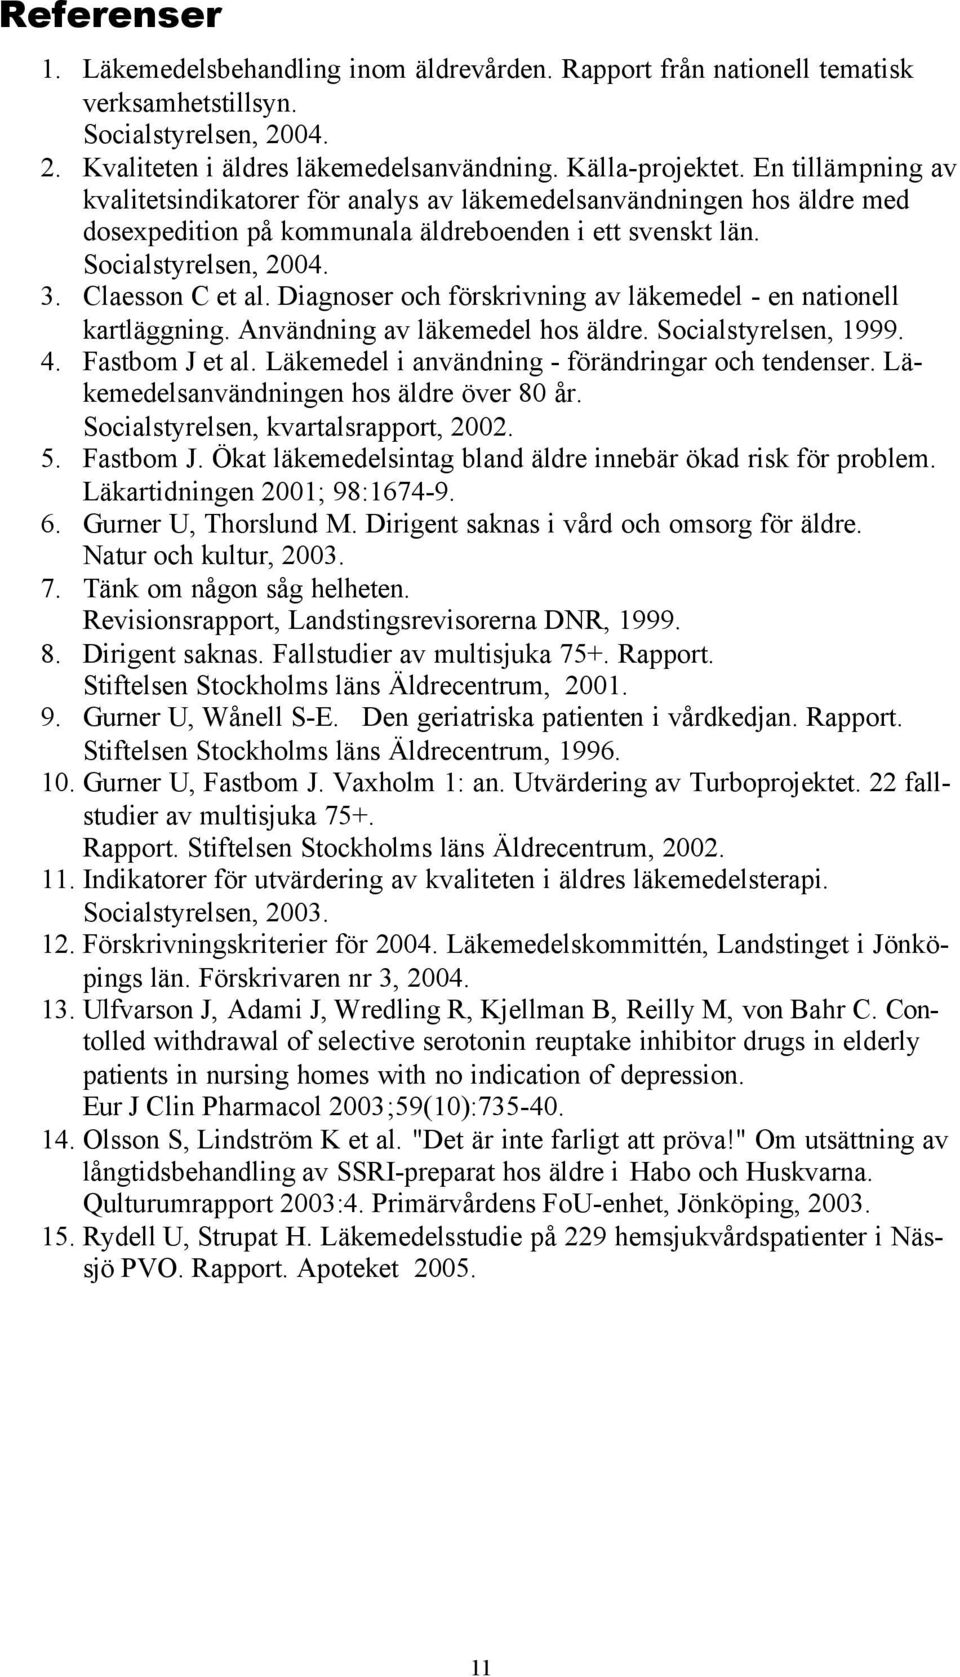 Diagnoser och förskrivning av läkemedel - en nationell kartläggning. Användning av läkemedel hos äldre. Socialstyrelsen, 1999. 4. Fastbom J et al. Läkemedel i användning - förändringar och tendenser.